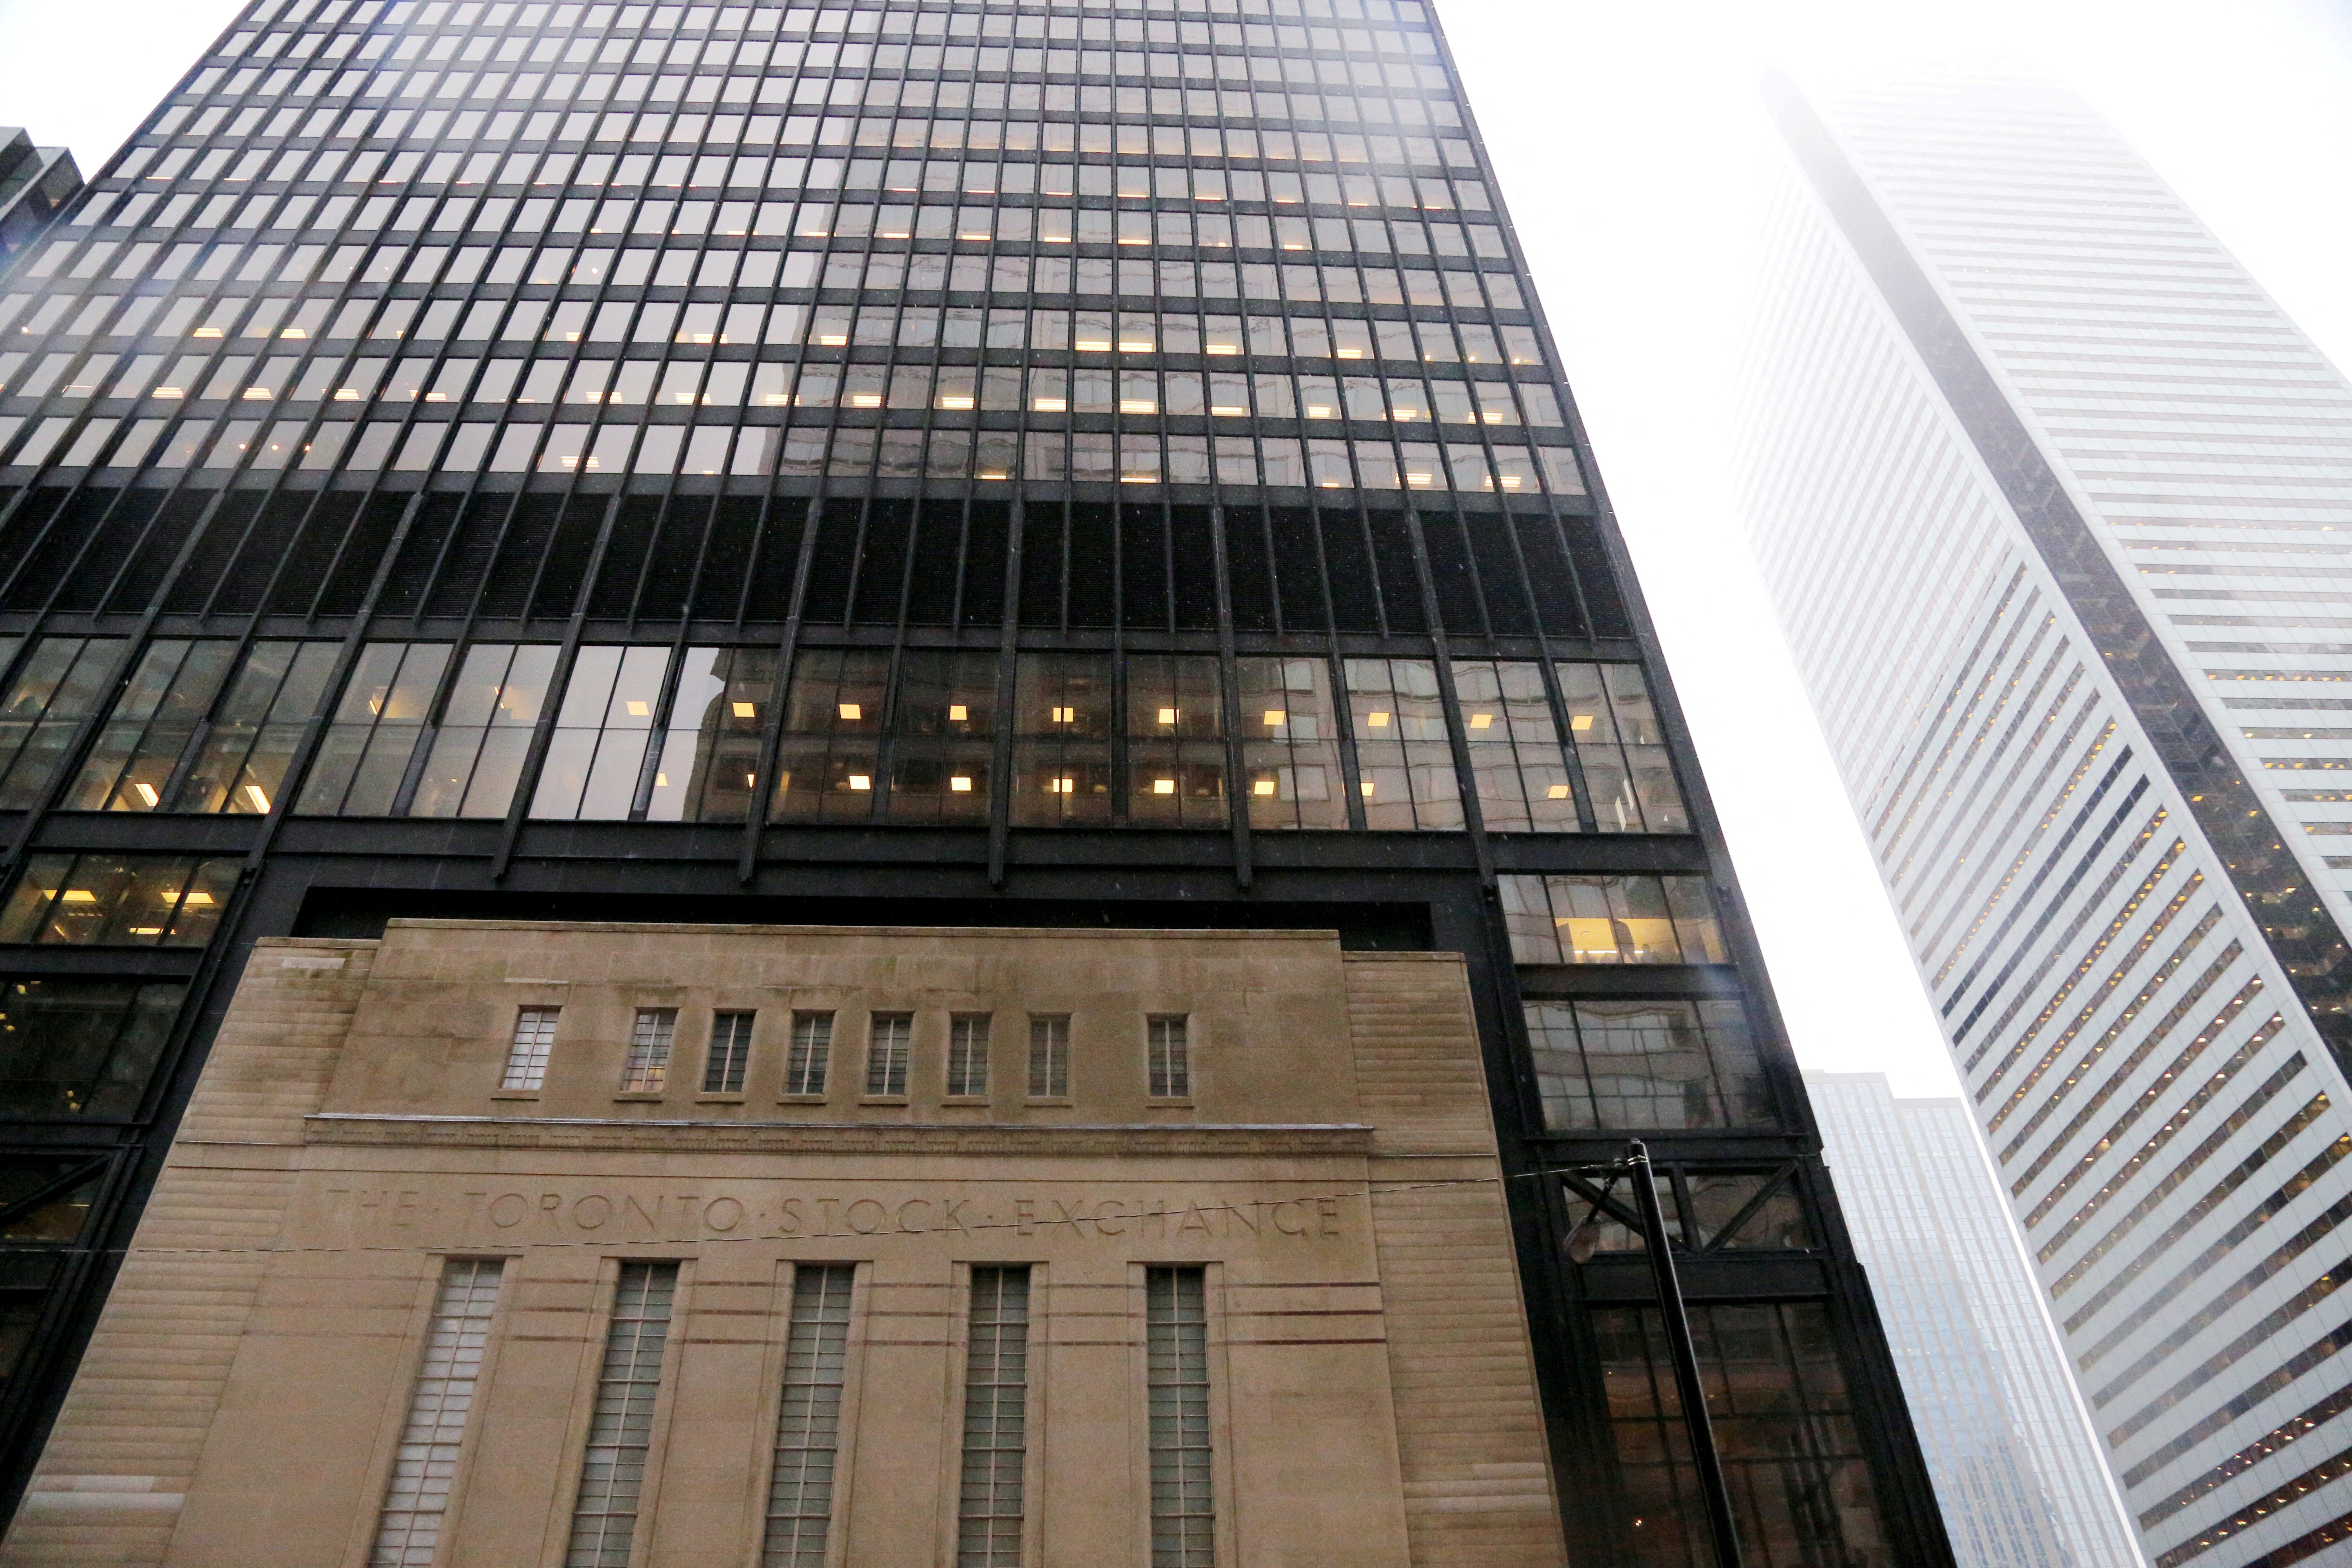 The facade of the original Toronto Stock Exchange building is seen in Toronto